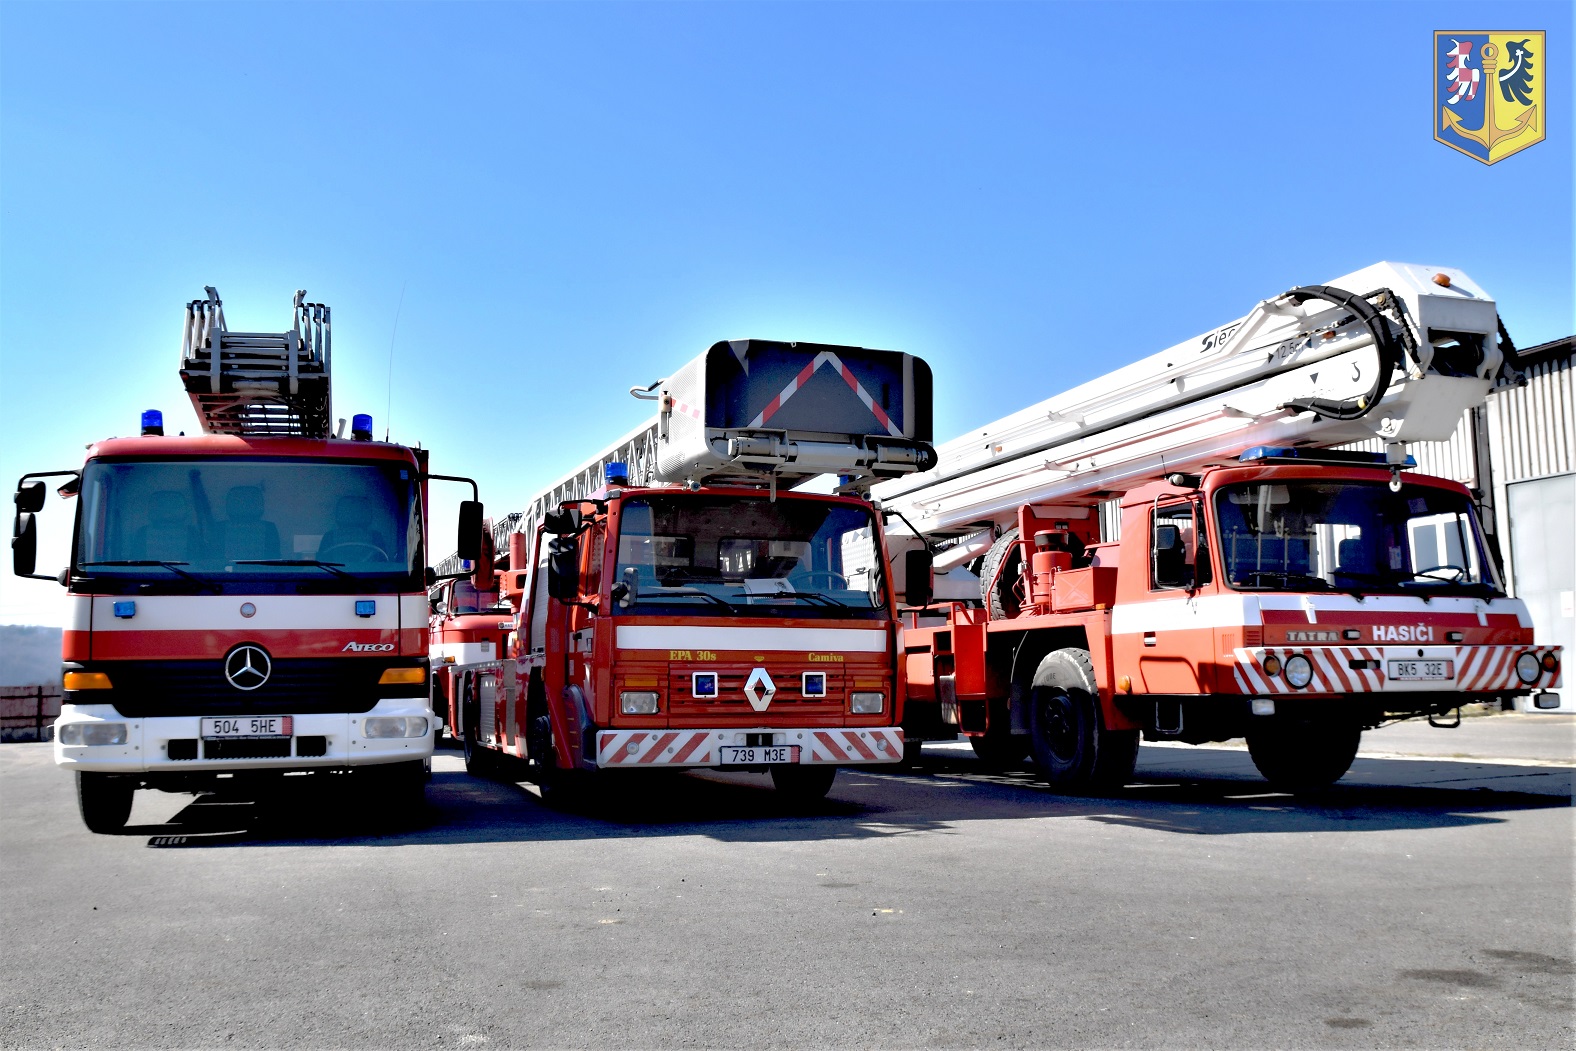 3 automobilové žebříky AZ 30 a tři automobilové plošiny AP 27 jako pomoc ukrajinským hasičům od českých kolegů (2)_upravené.jpg